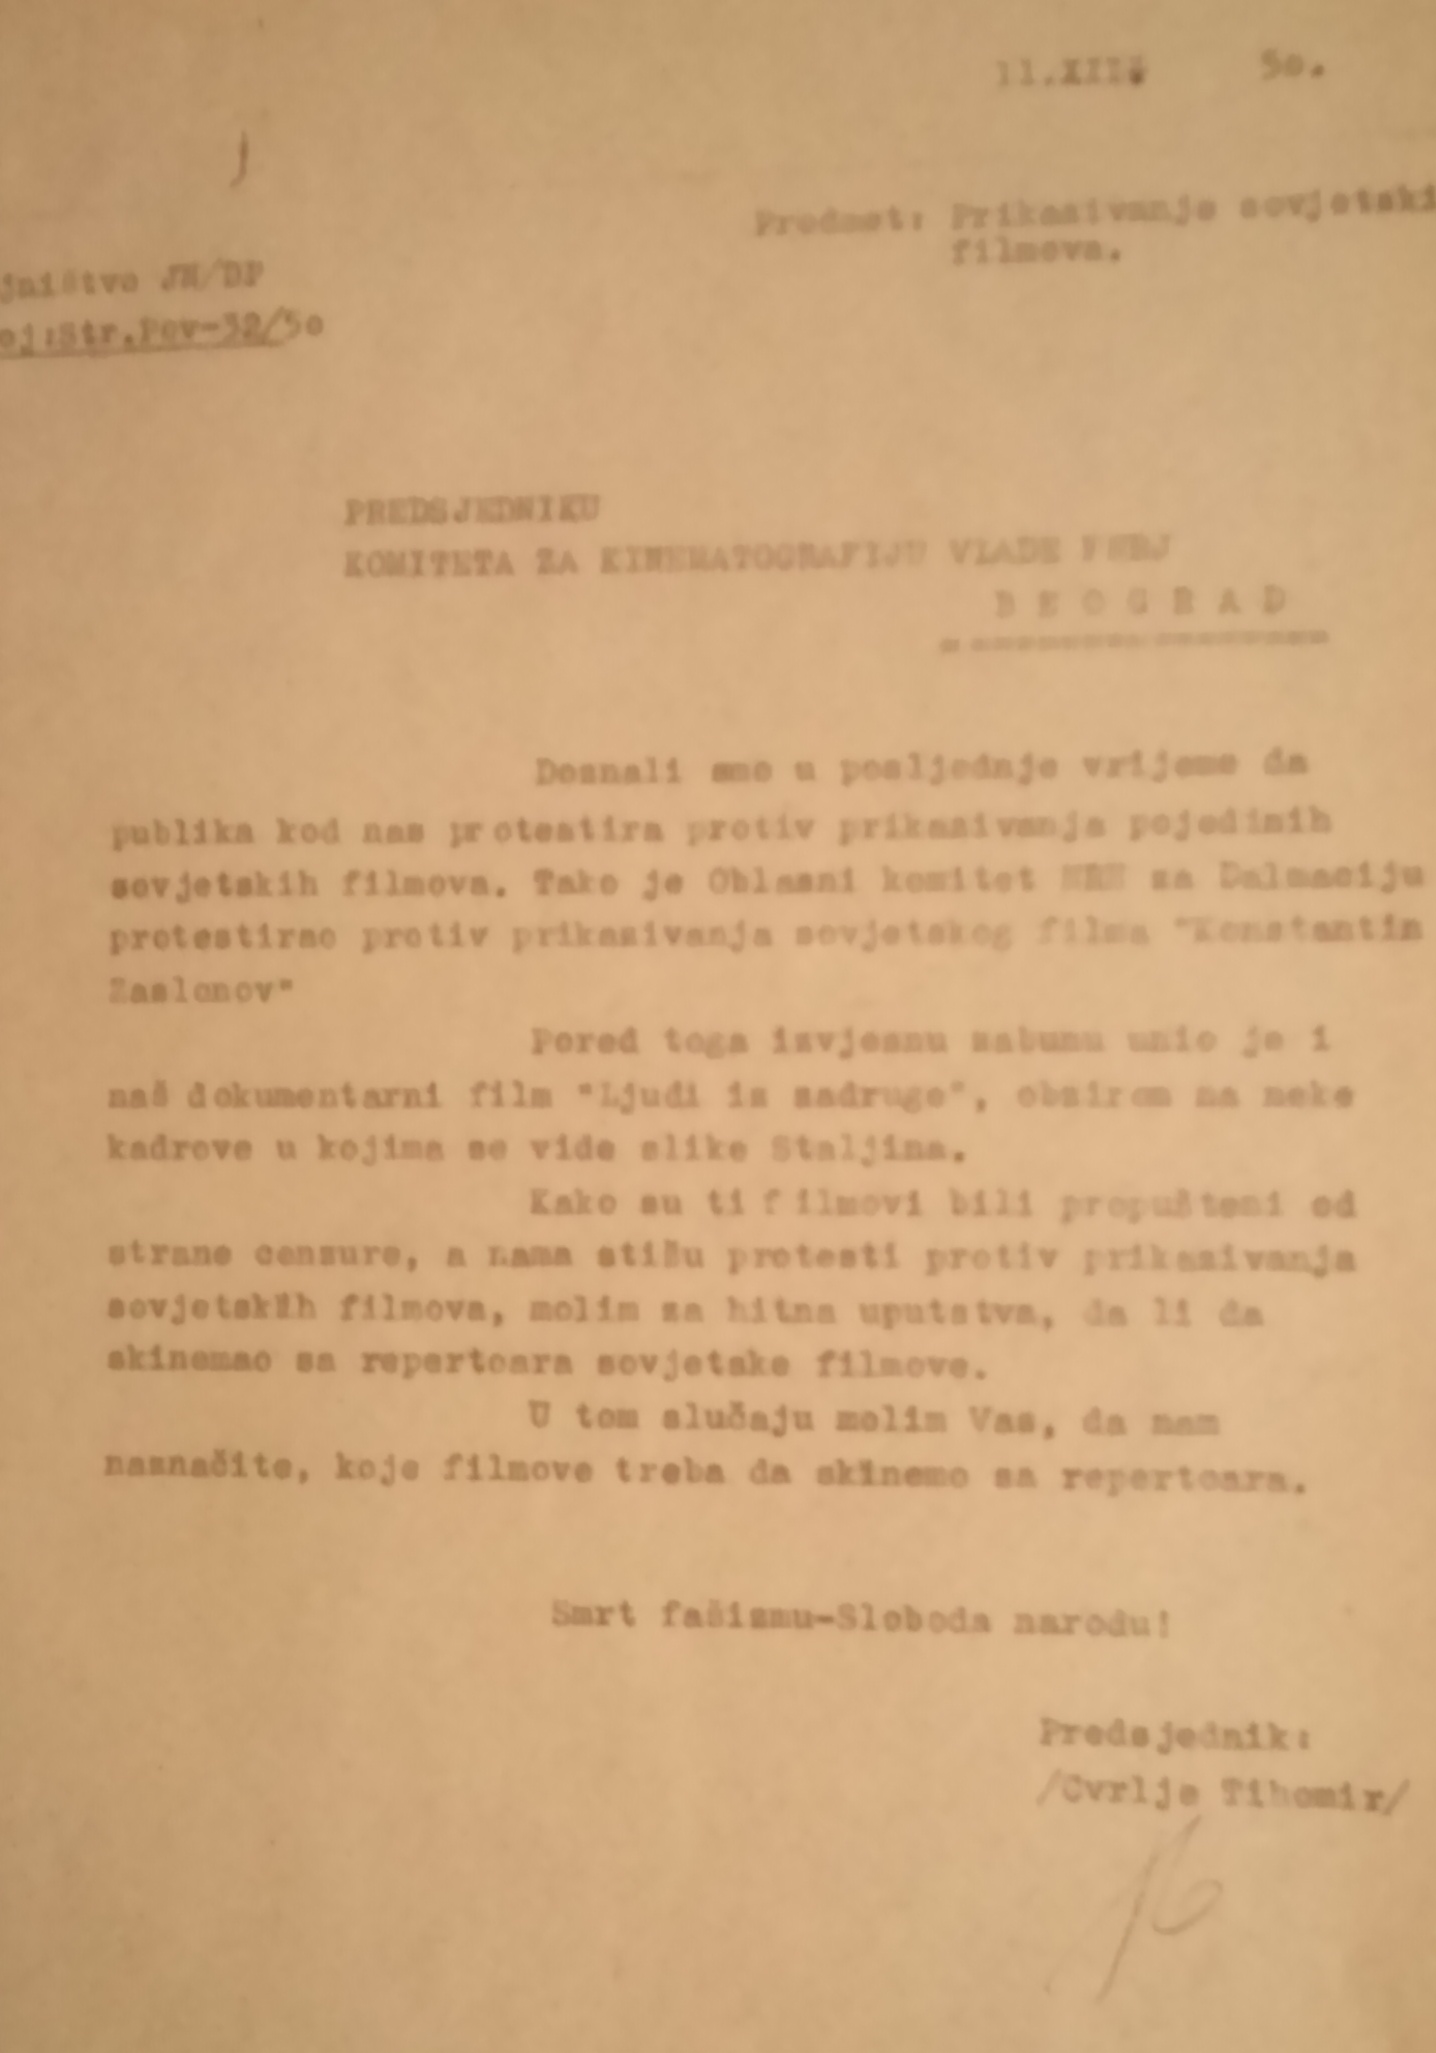 Zahtjev za uputom u vezi s prikazivanjem sovjetskih filmova u hrvatskim kinima. 11. prosinca 1950. Arhivski dokument.